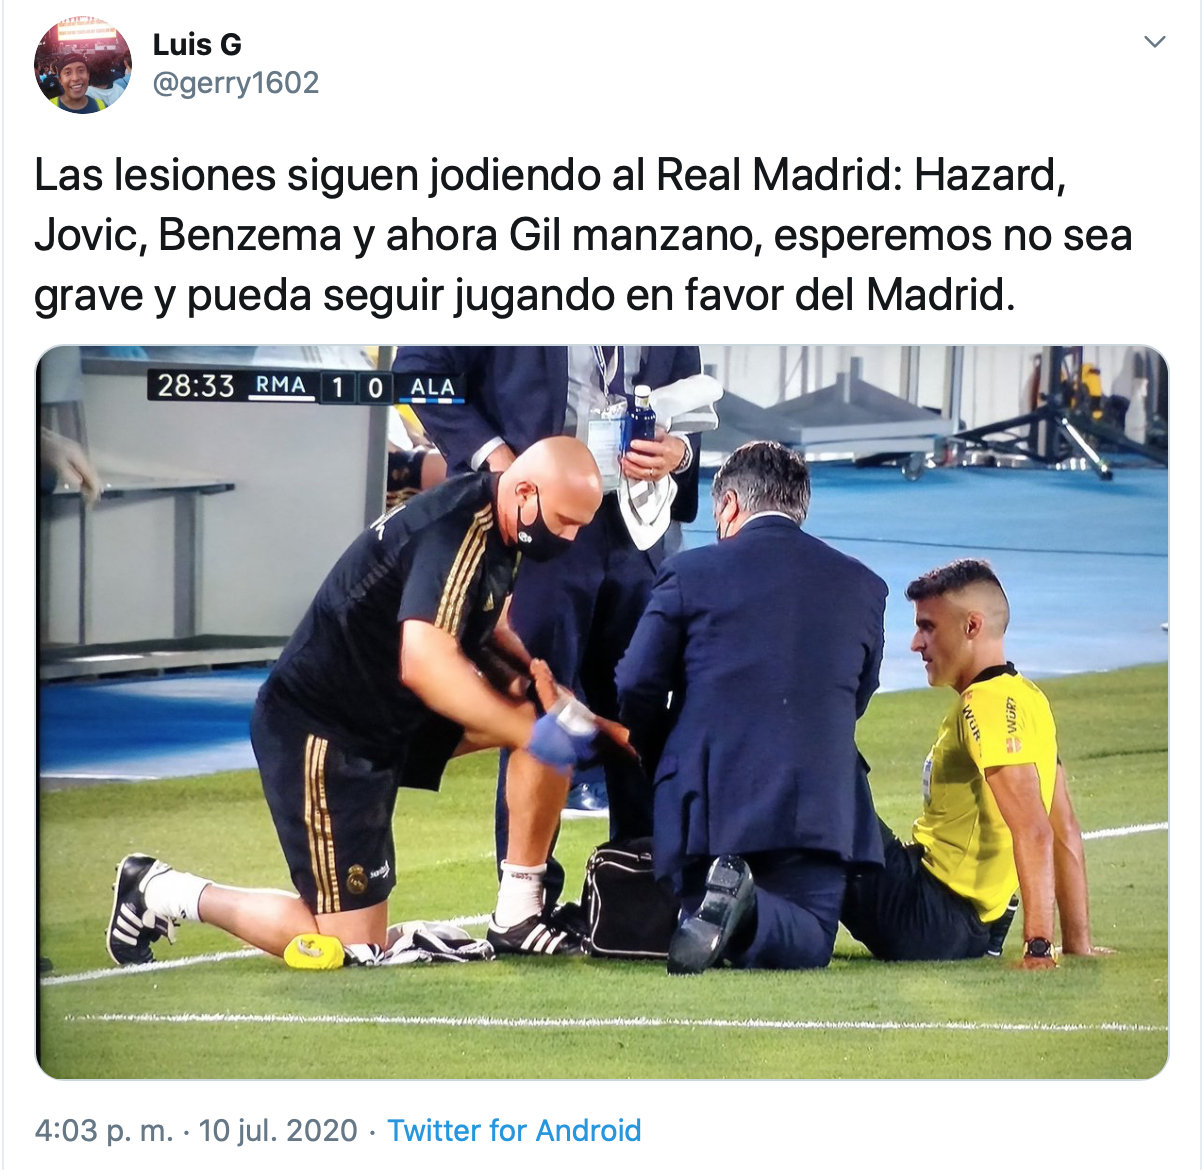 Twitter explotó ante la lesión de Gil Manzano el "jugador 12" del Real Madrid